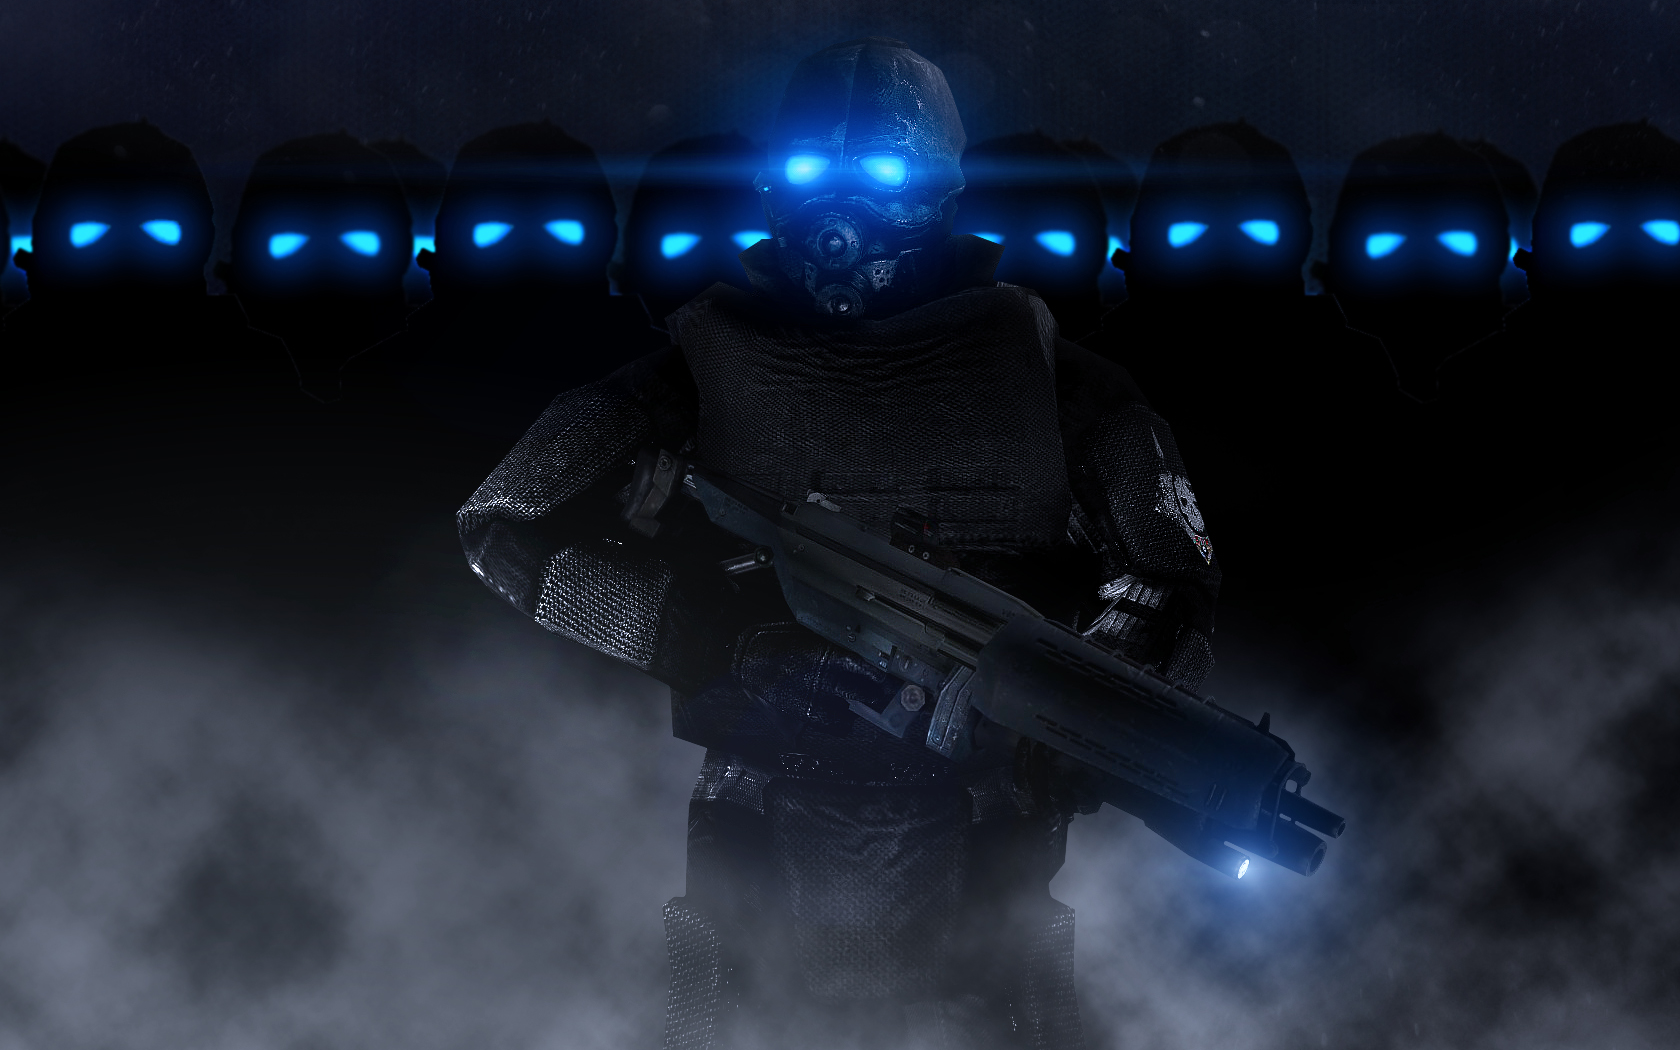 General 1680x1050 Half-Life 2 Combine video game art blue eyes dark weapon glowing eyes digital art helmet science fiction PC gaming